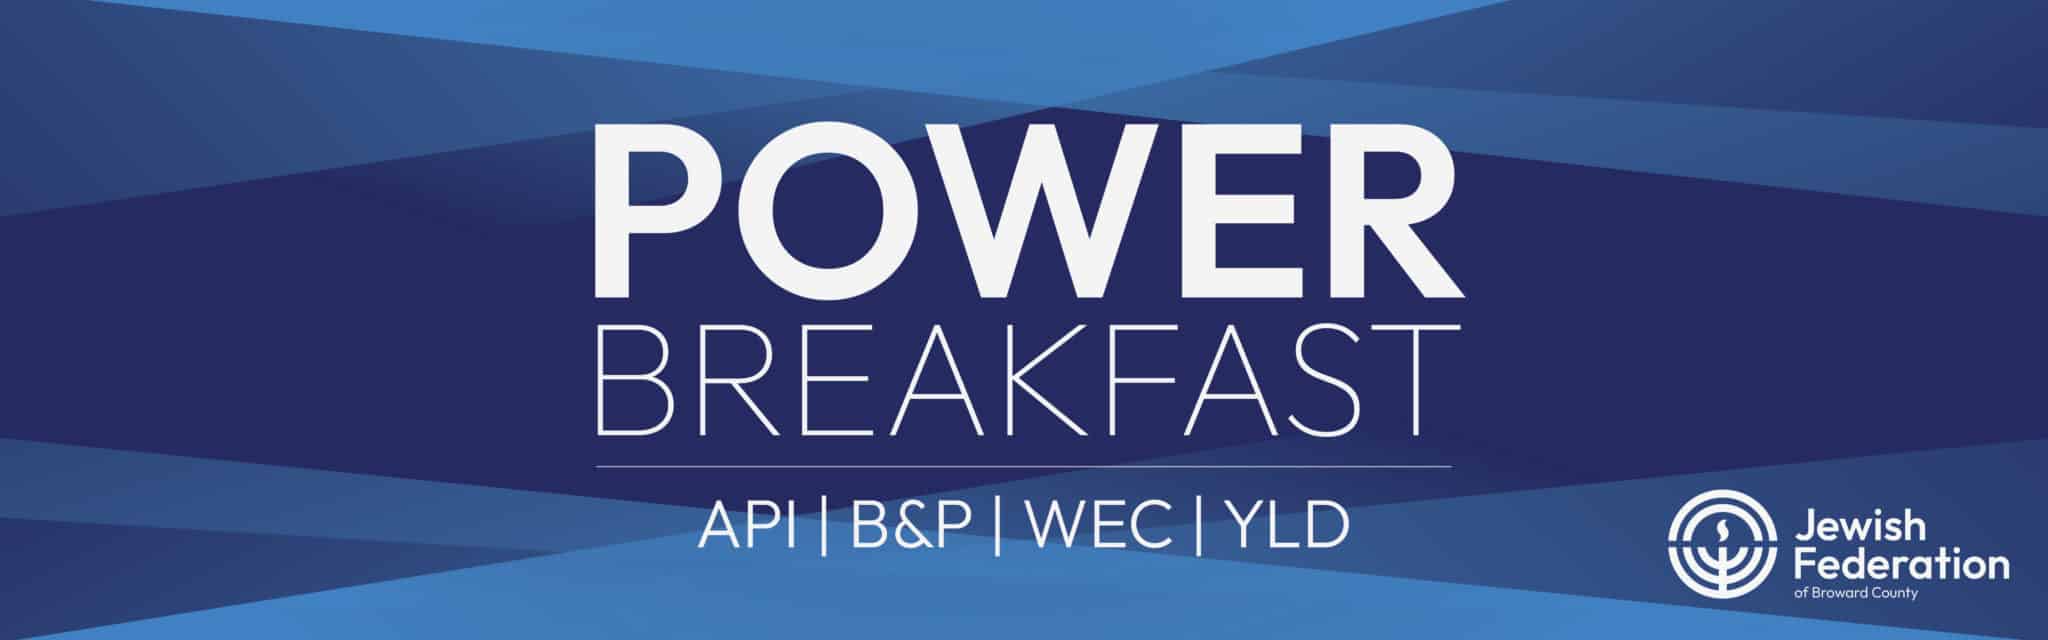 Power Breakfast Registration